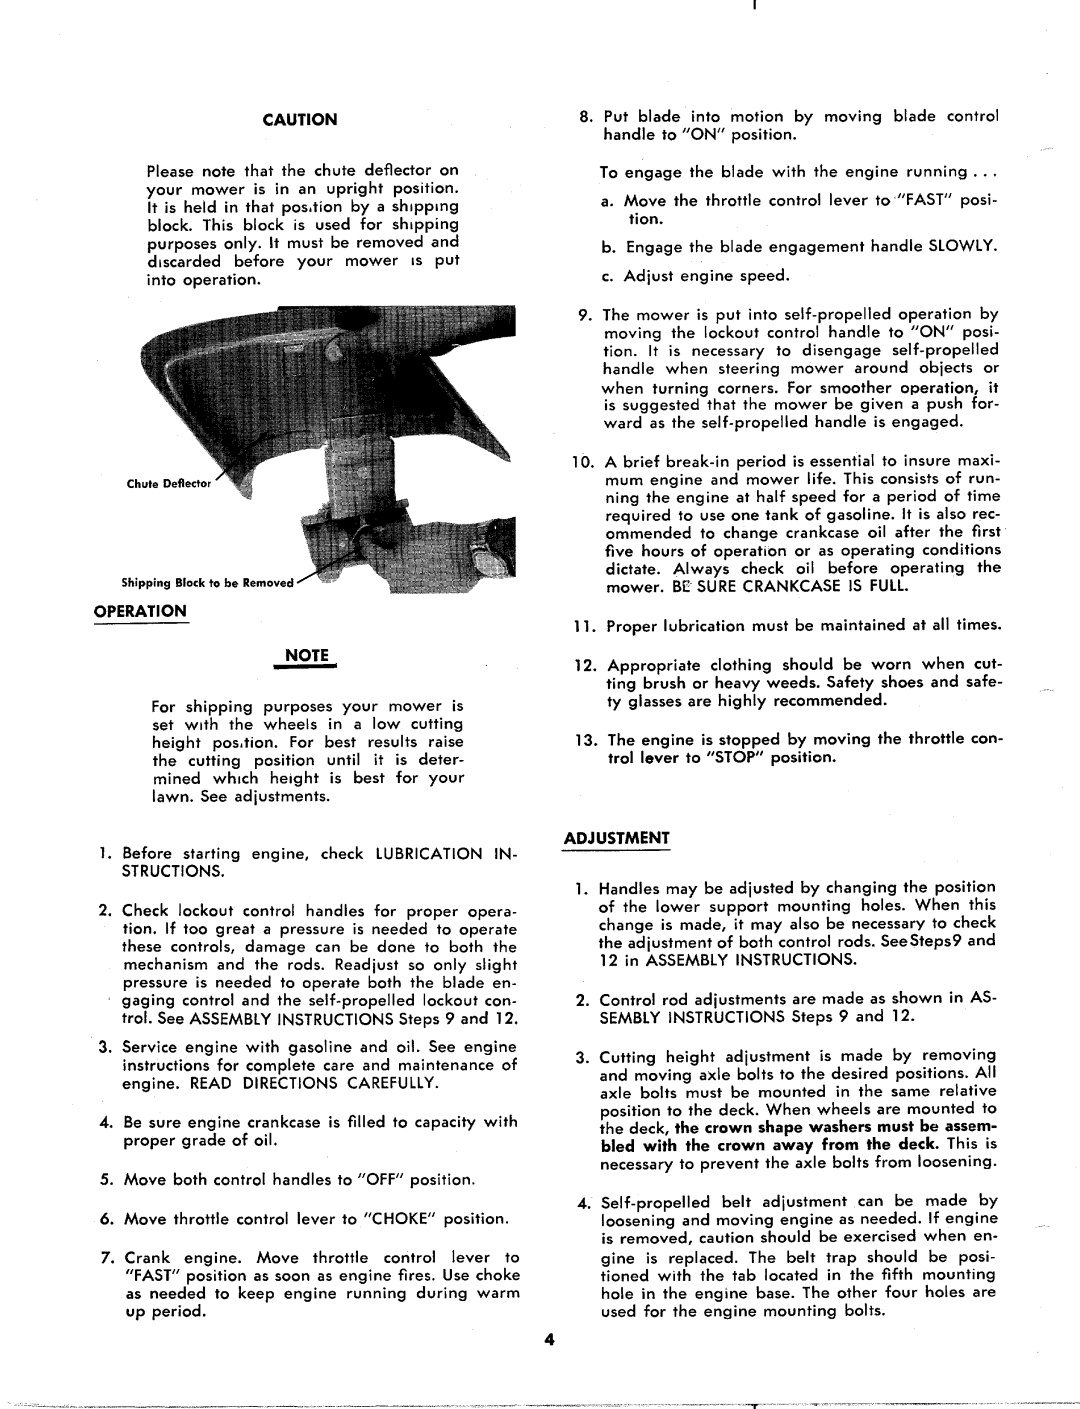 MTD 124-550A manual 